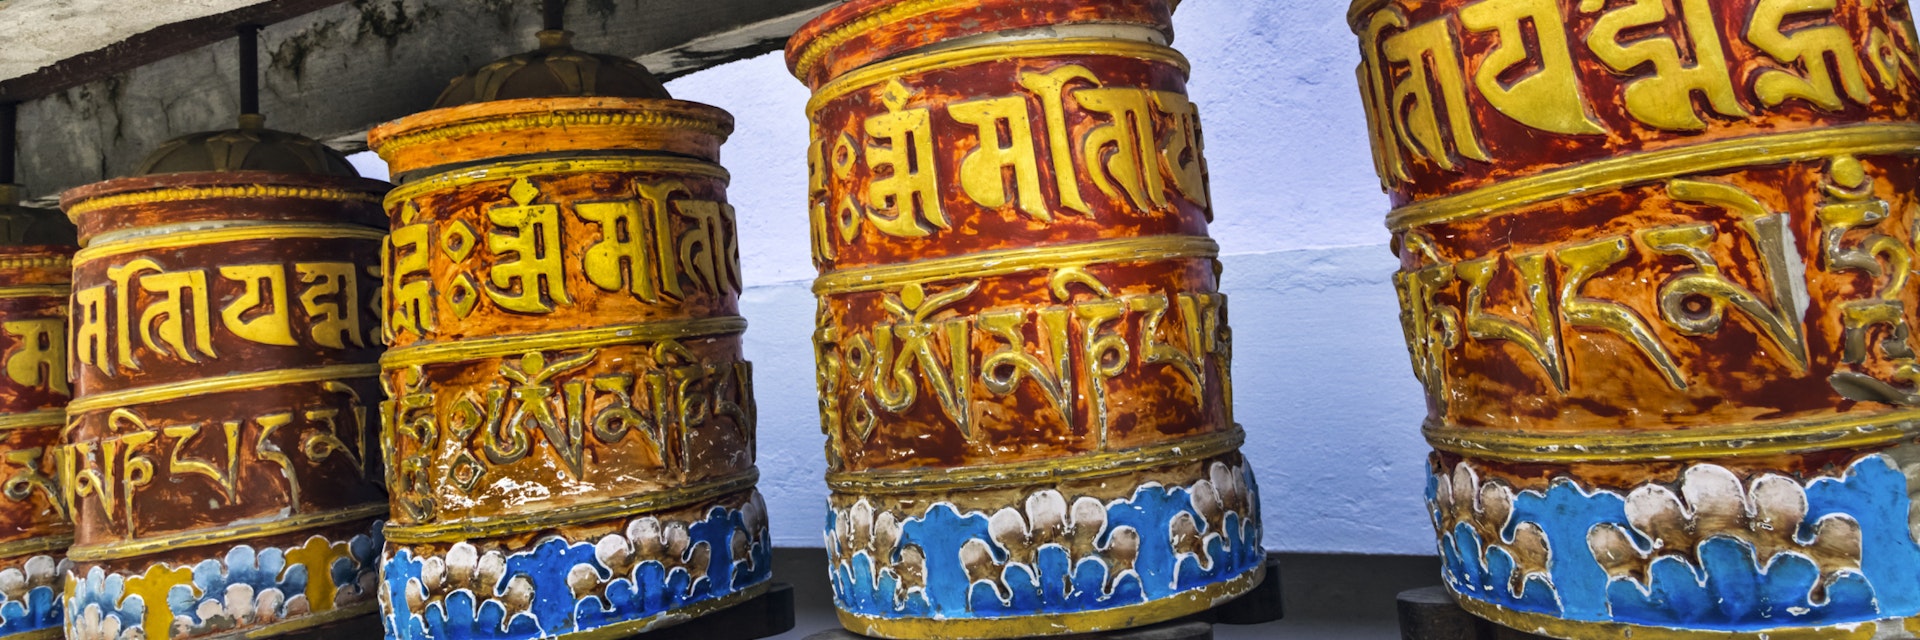 Rumtek, Tibetan prayer wheels